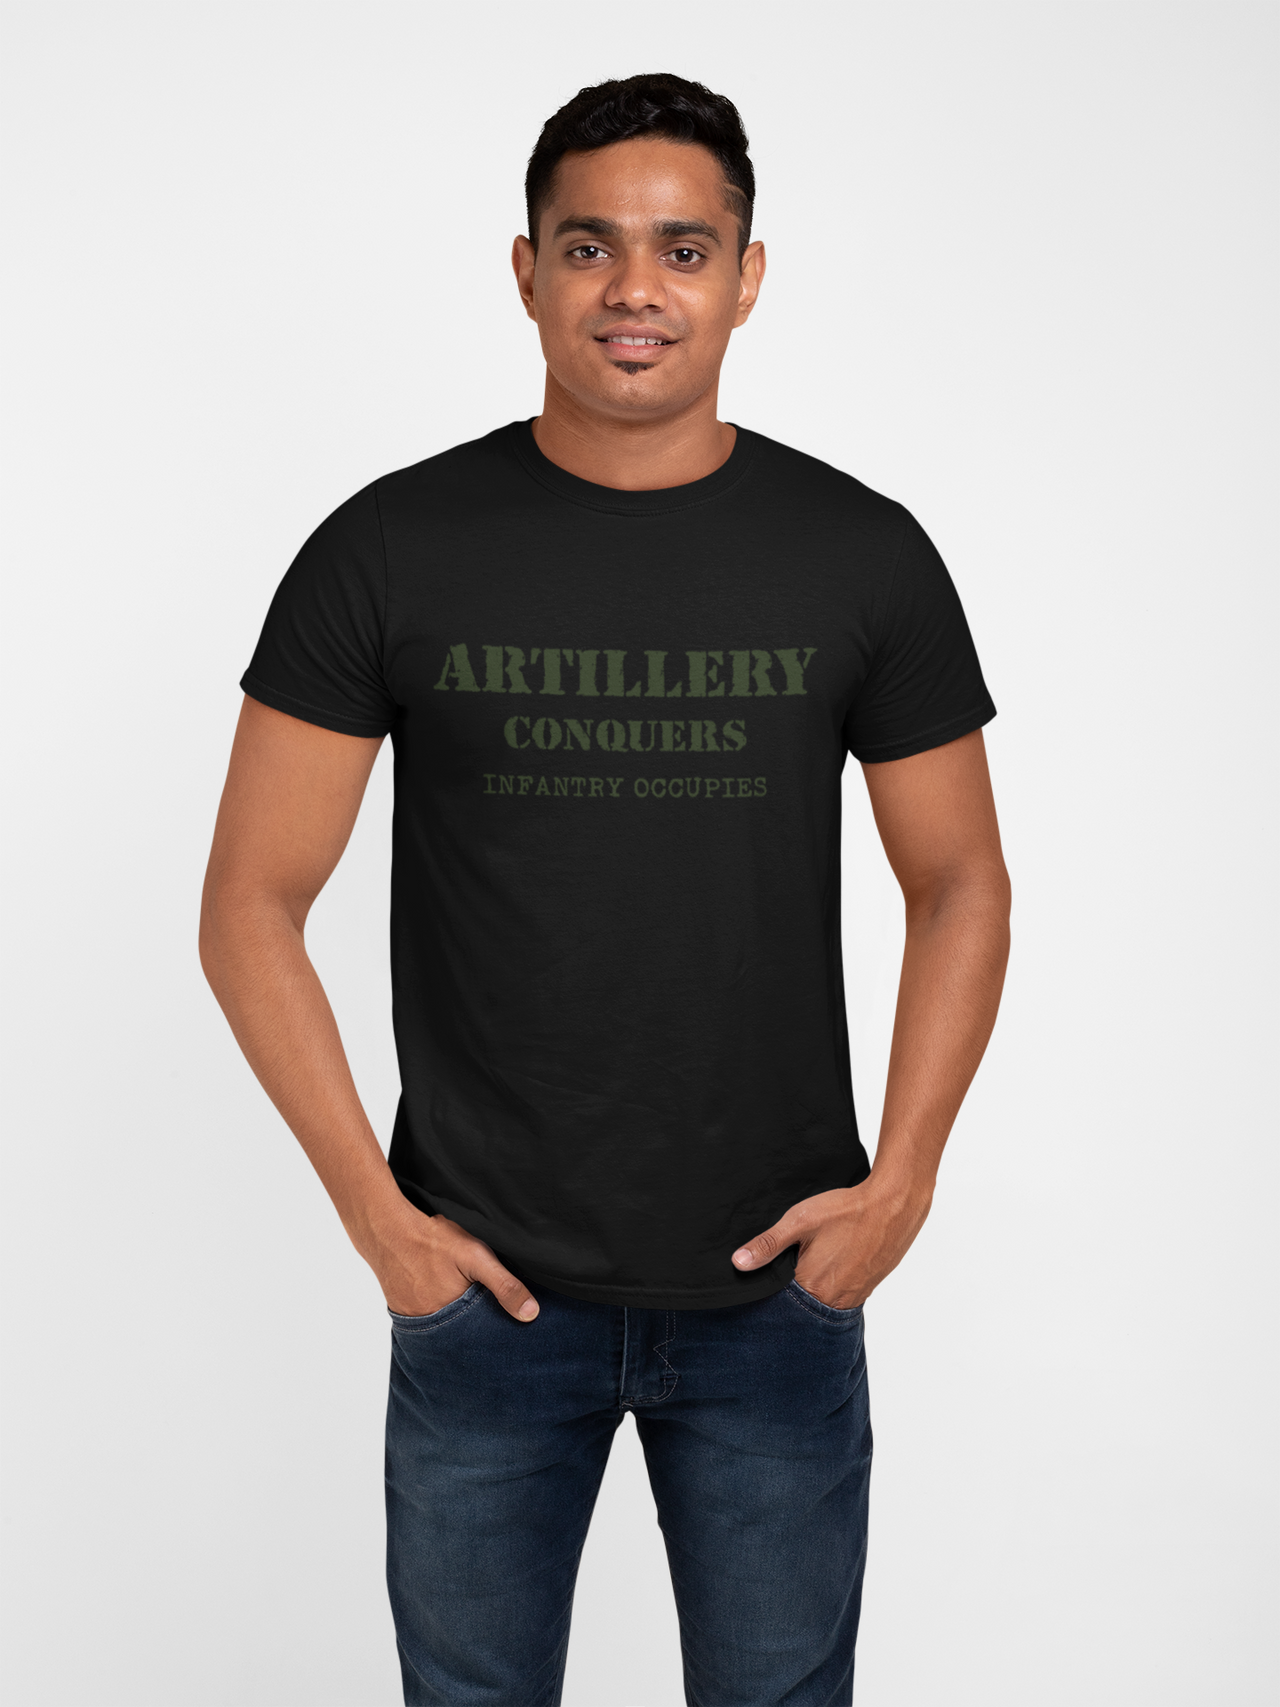 Artillery T-shirt - Artillery Conquers, Infantry Occupies (Men)